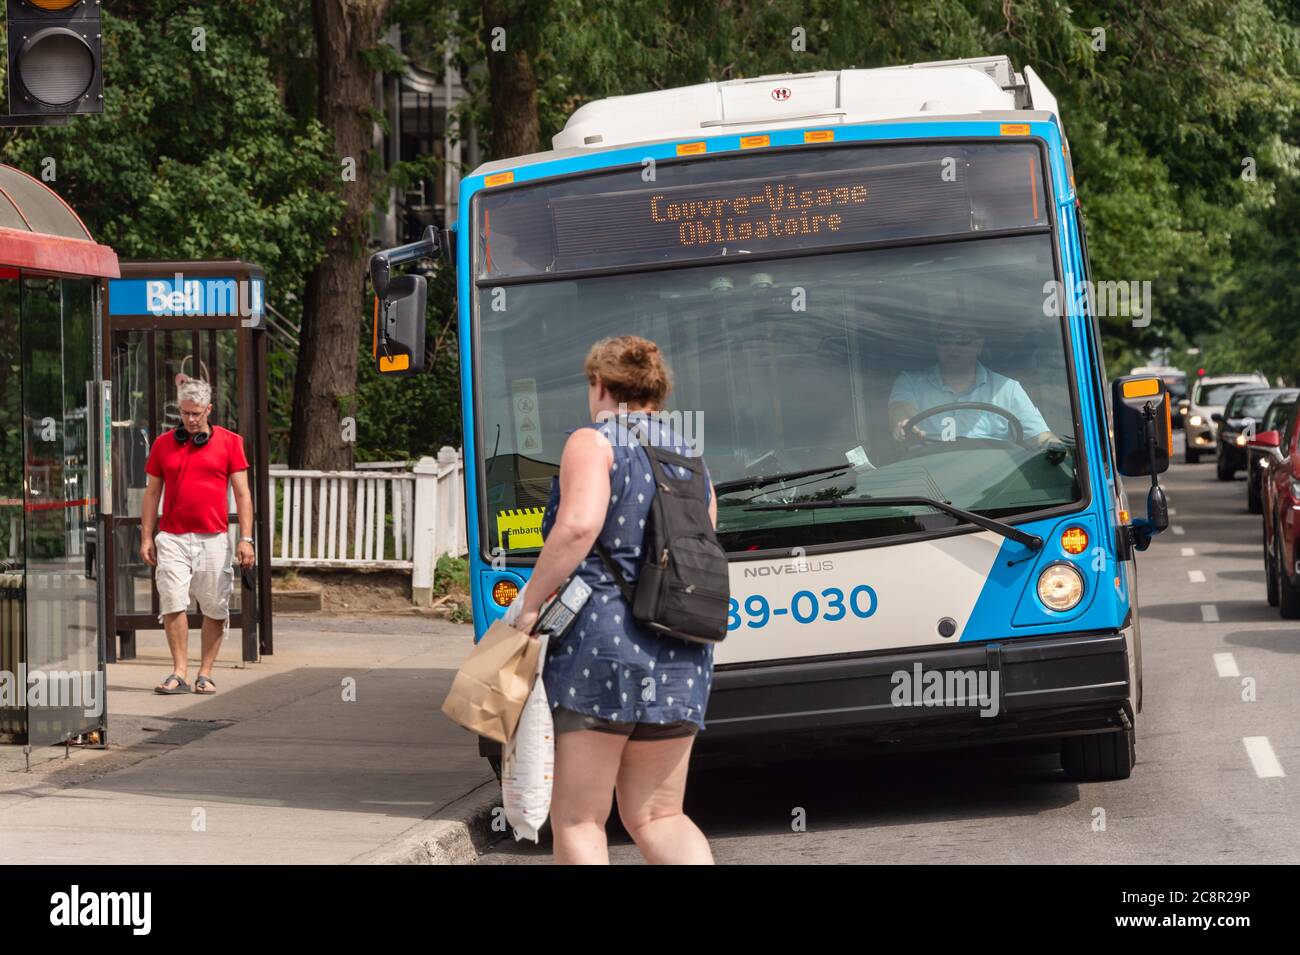 Montreal, CA - 26. Juli 2020: Digital Signage im Bus, die besagt, dass Gesichtsmasken erforderlich sind, um den Bus zu besteigen Stockfoto